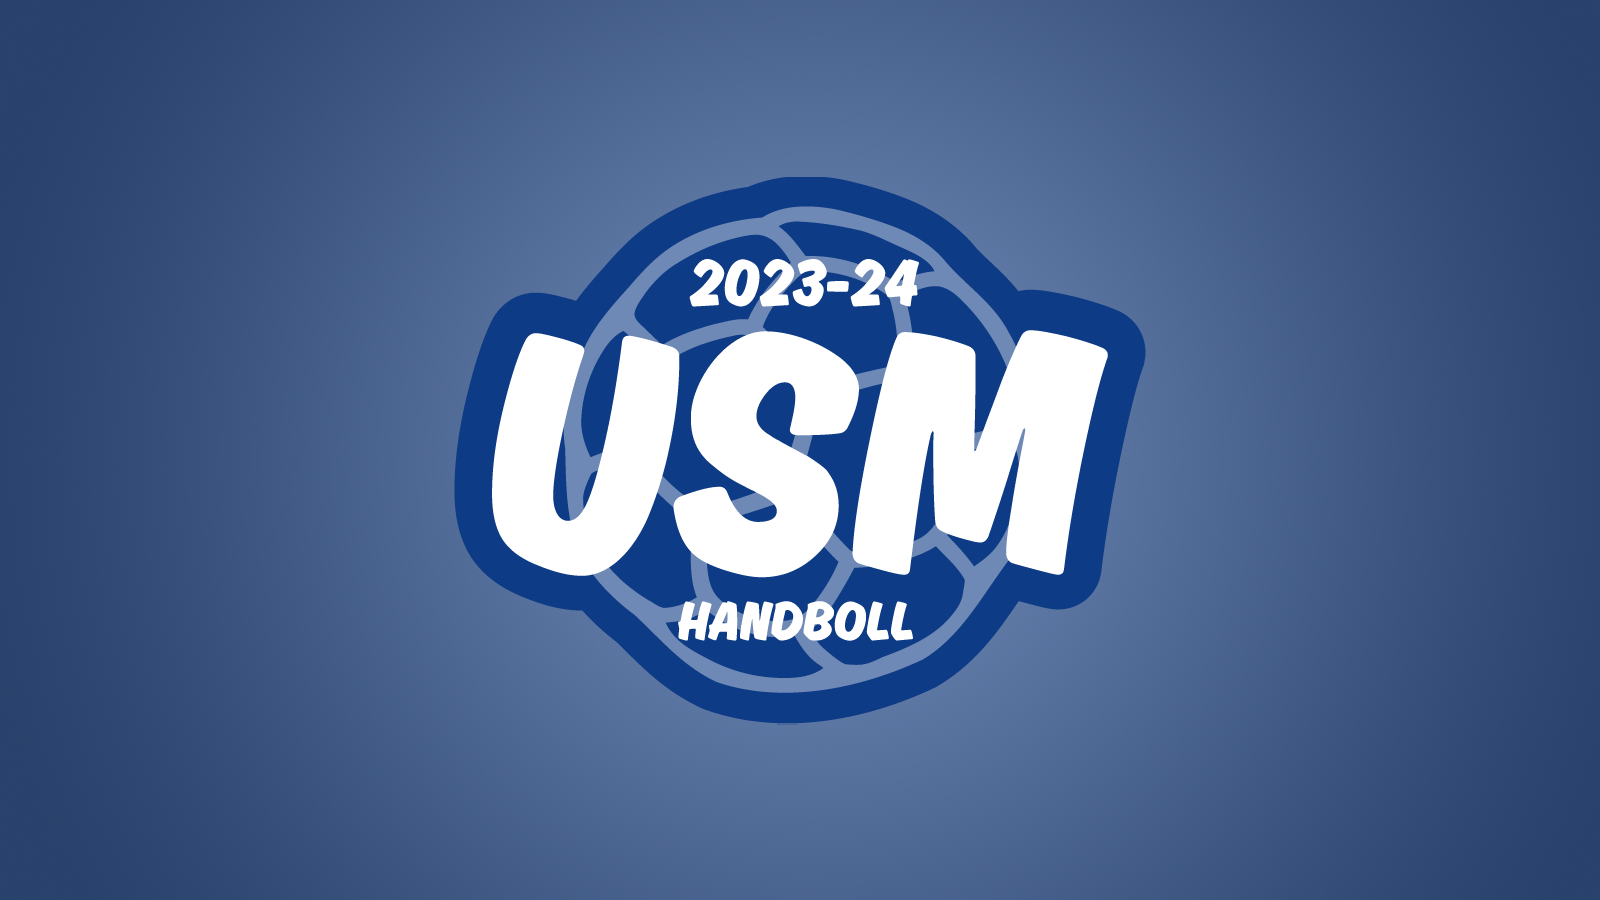 Logotyp för tävlingen Gjensidige USM